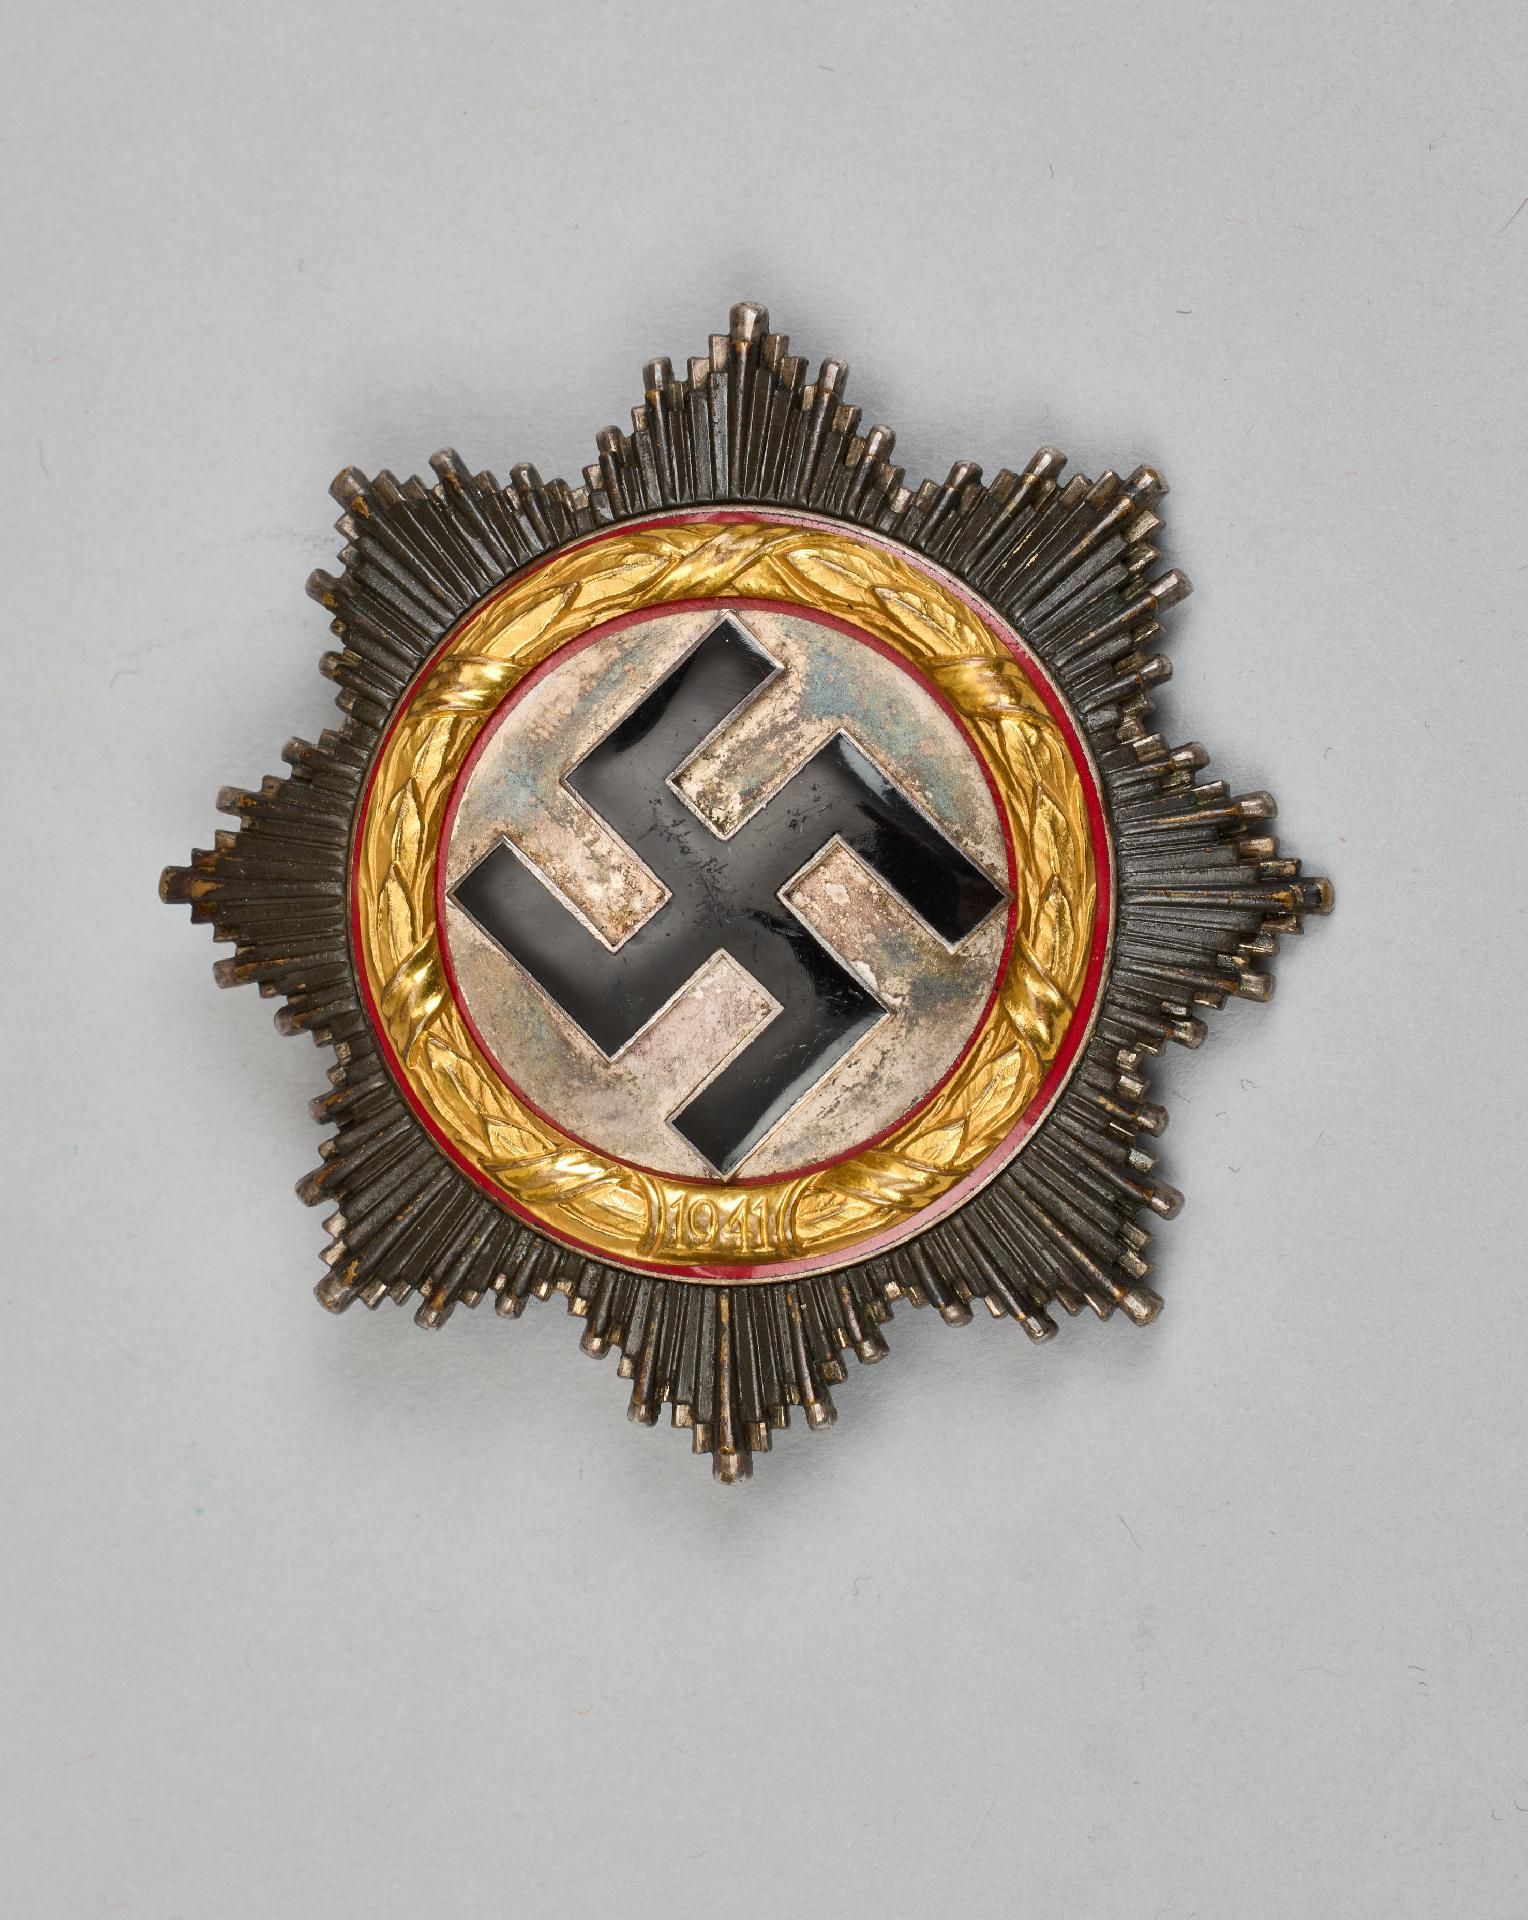 Deutsches Kreuz : Deutsches Kreuz in Gold.